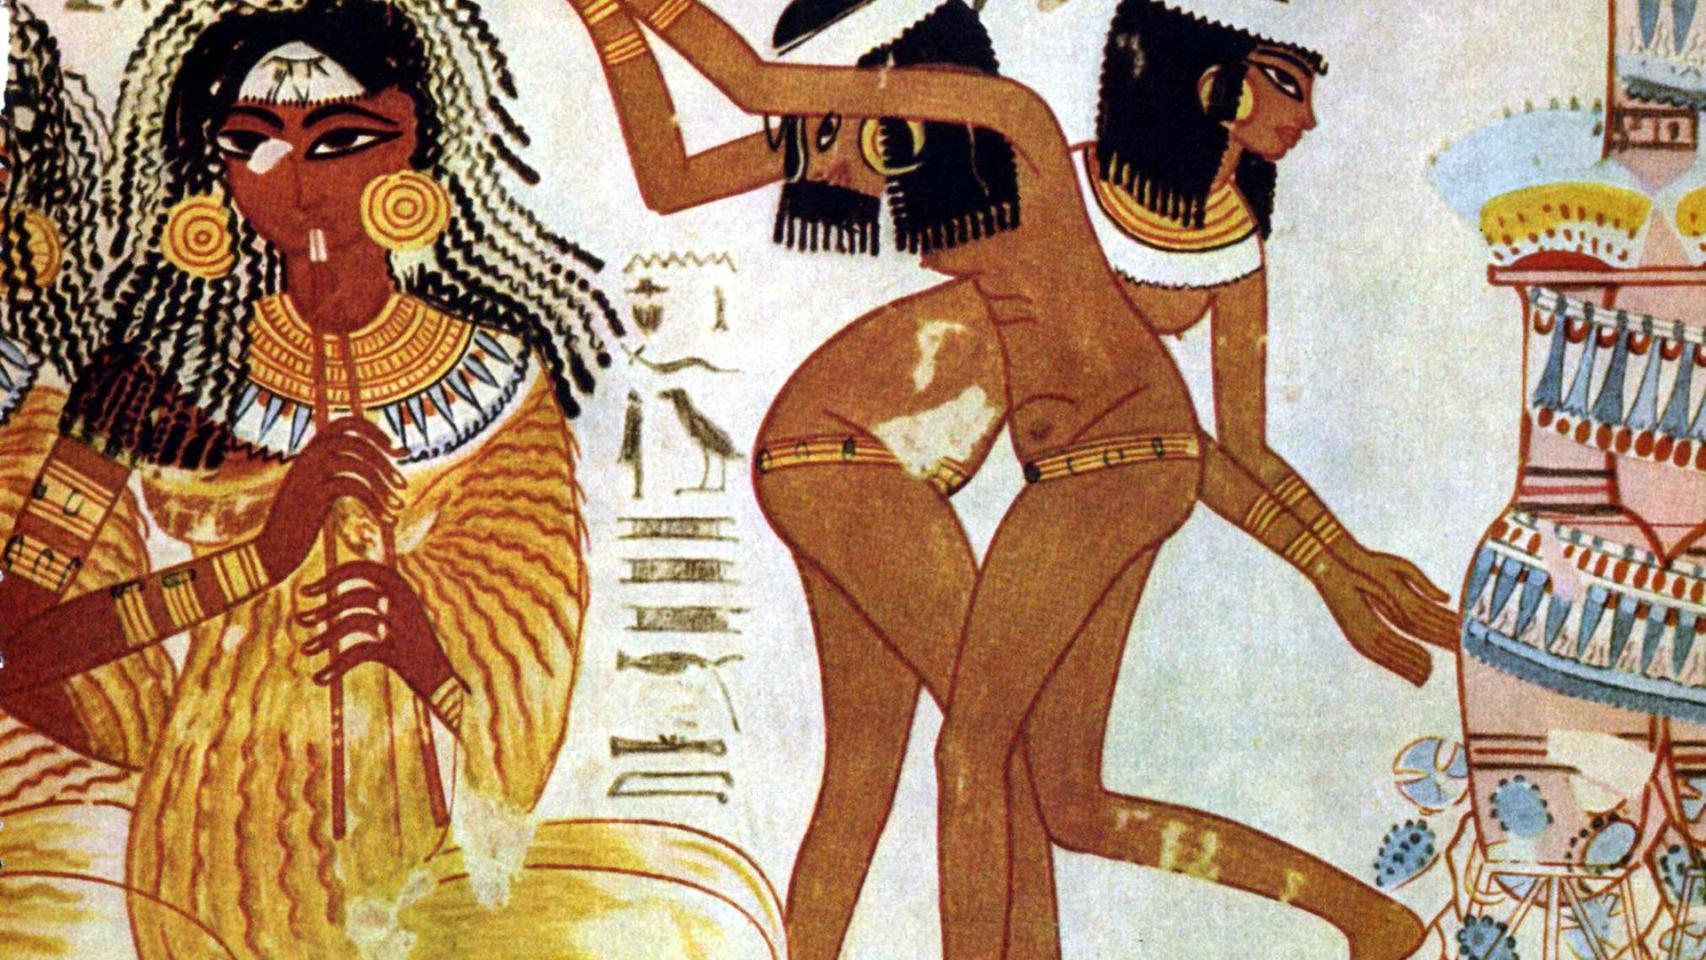 Прелестные египтянки ублажают парня с классным стволом